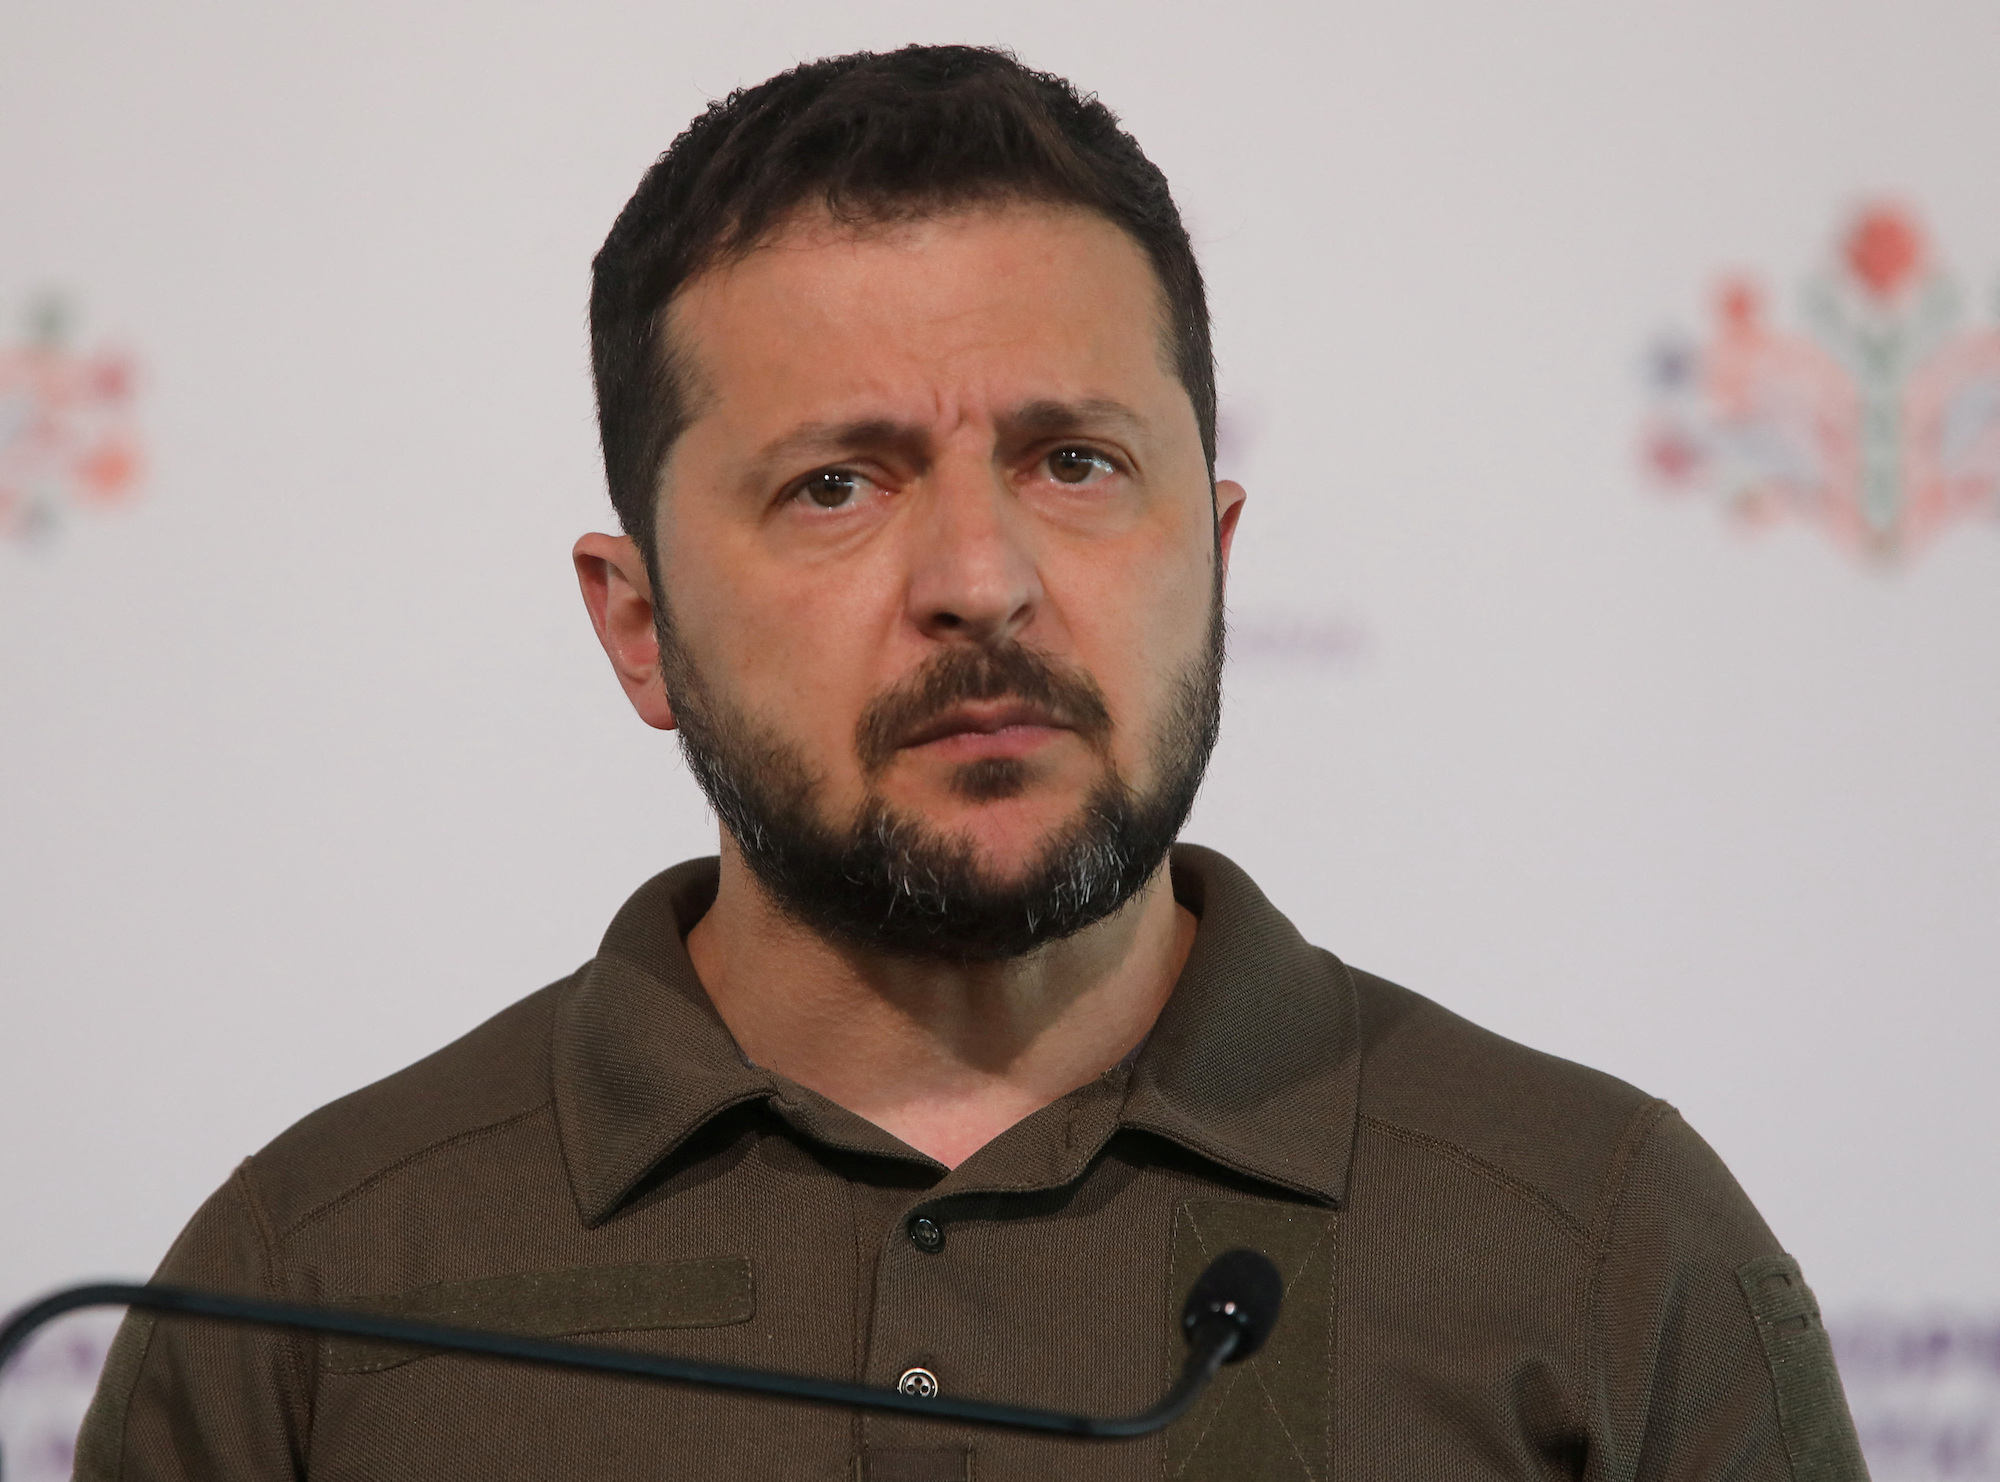 Zelensky attends a press conference in Moldova on Thursday.